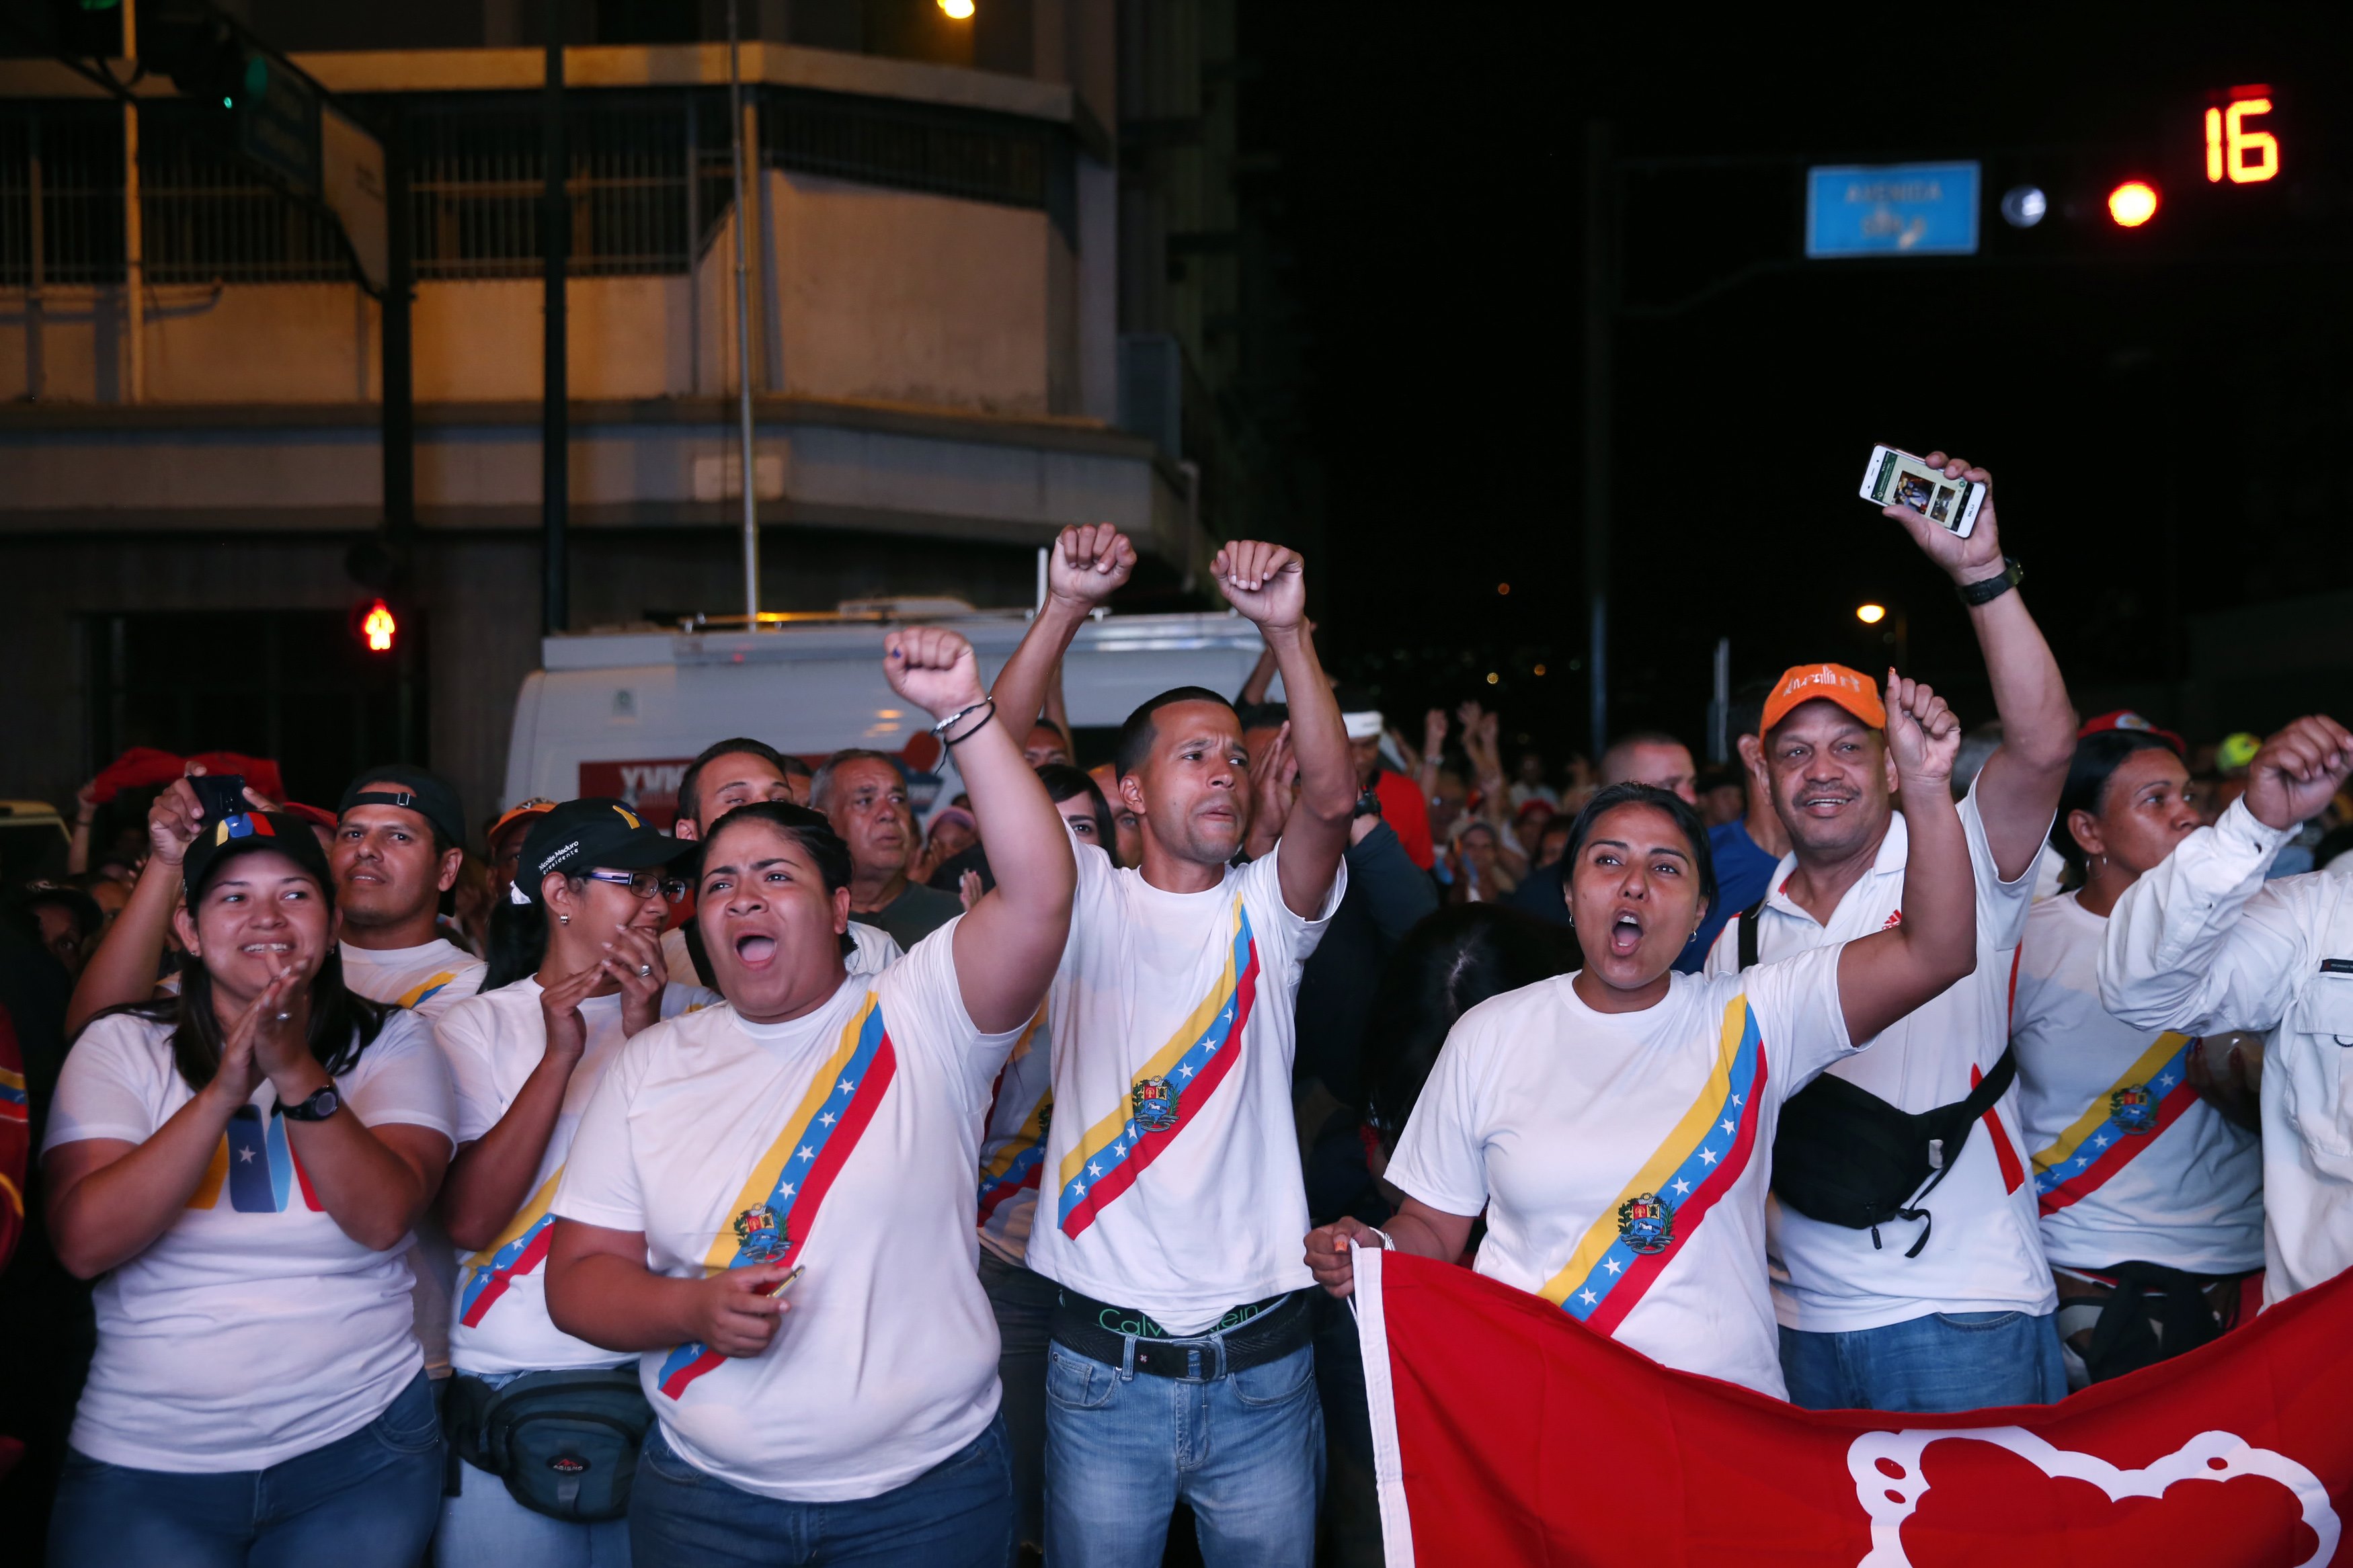 Los acompañantes internacionales de las elecciones en Venezuela exigen el respeto de los resultados que son el reflejo de la voluntad popular.